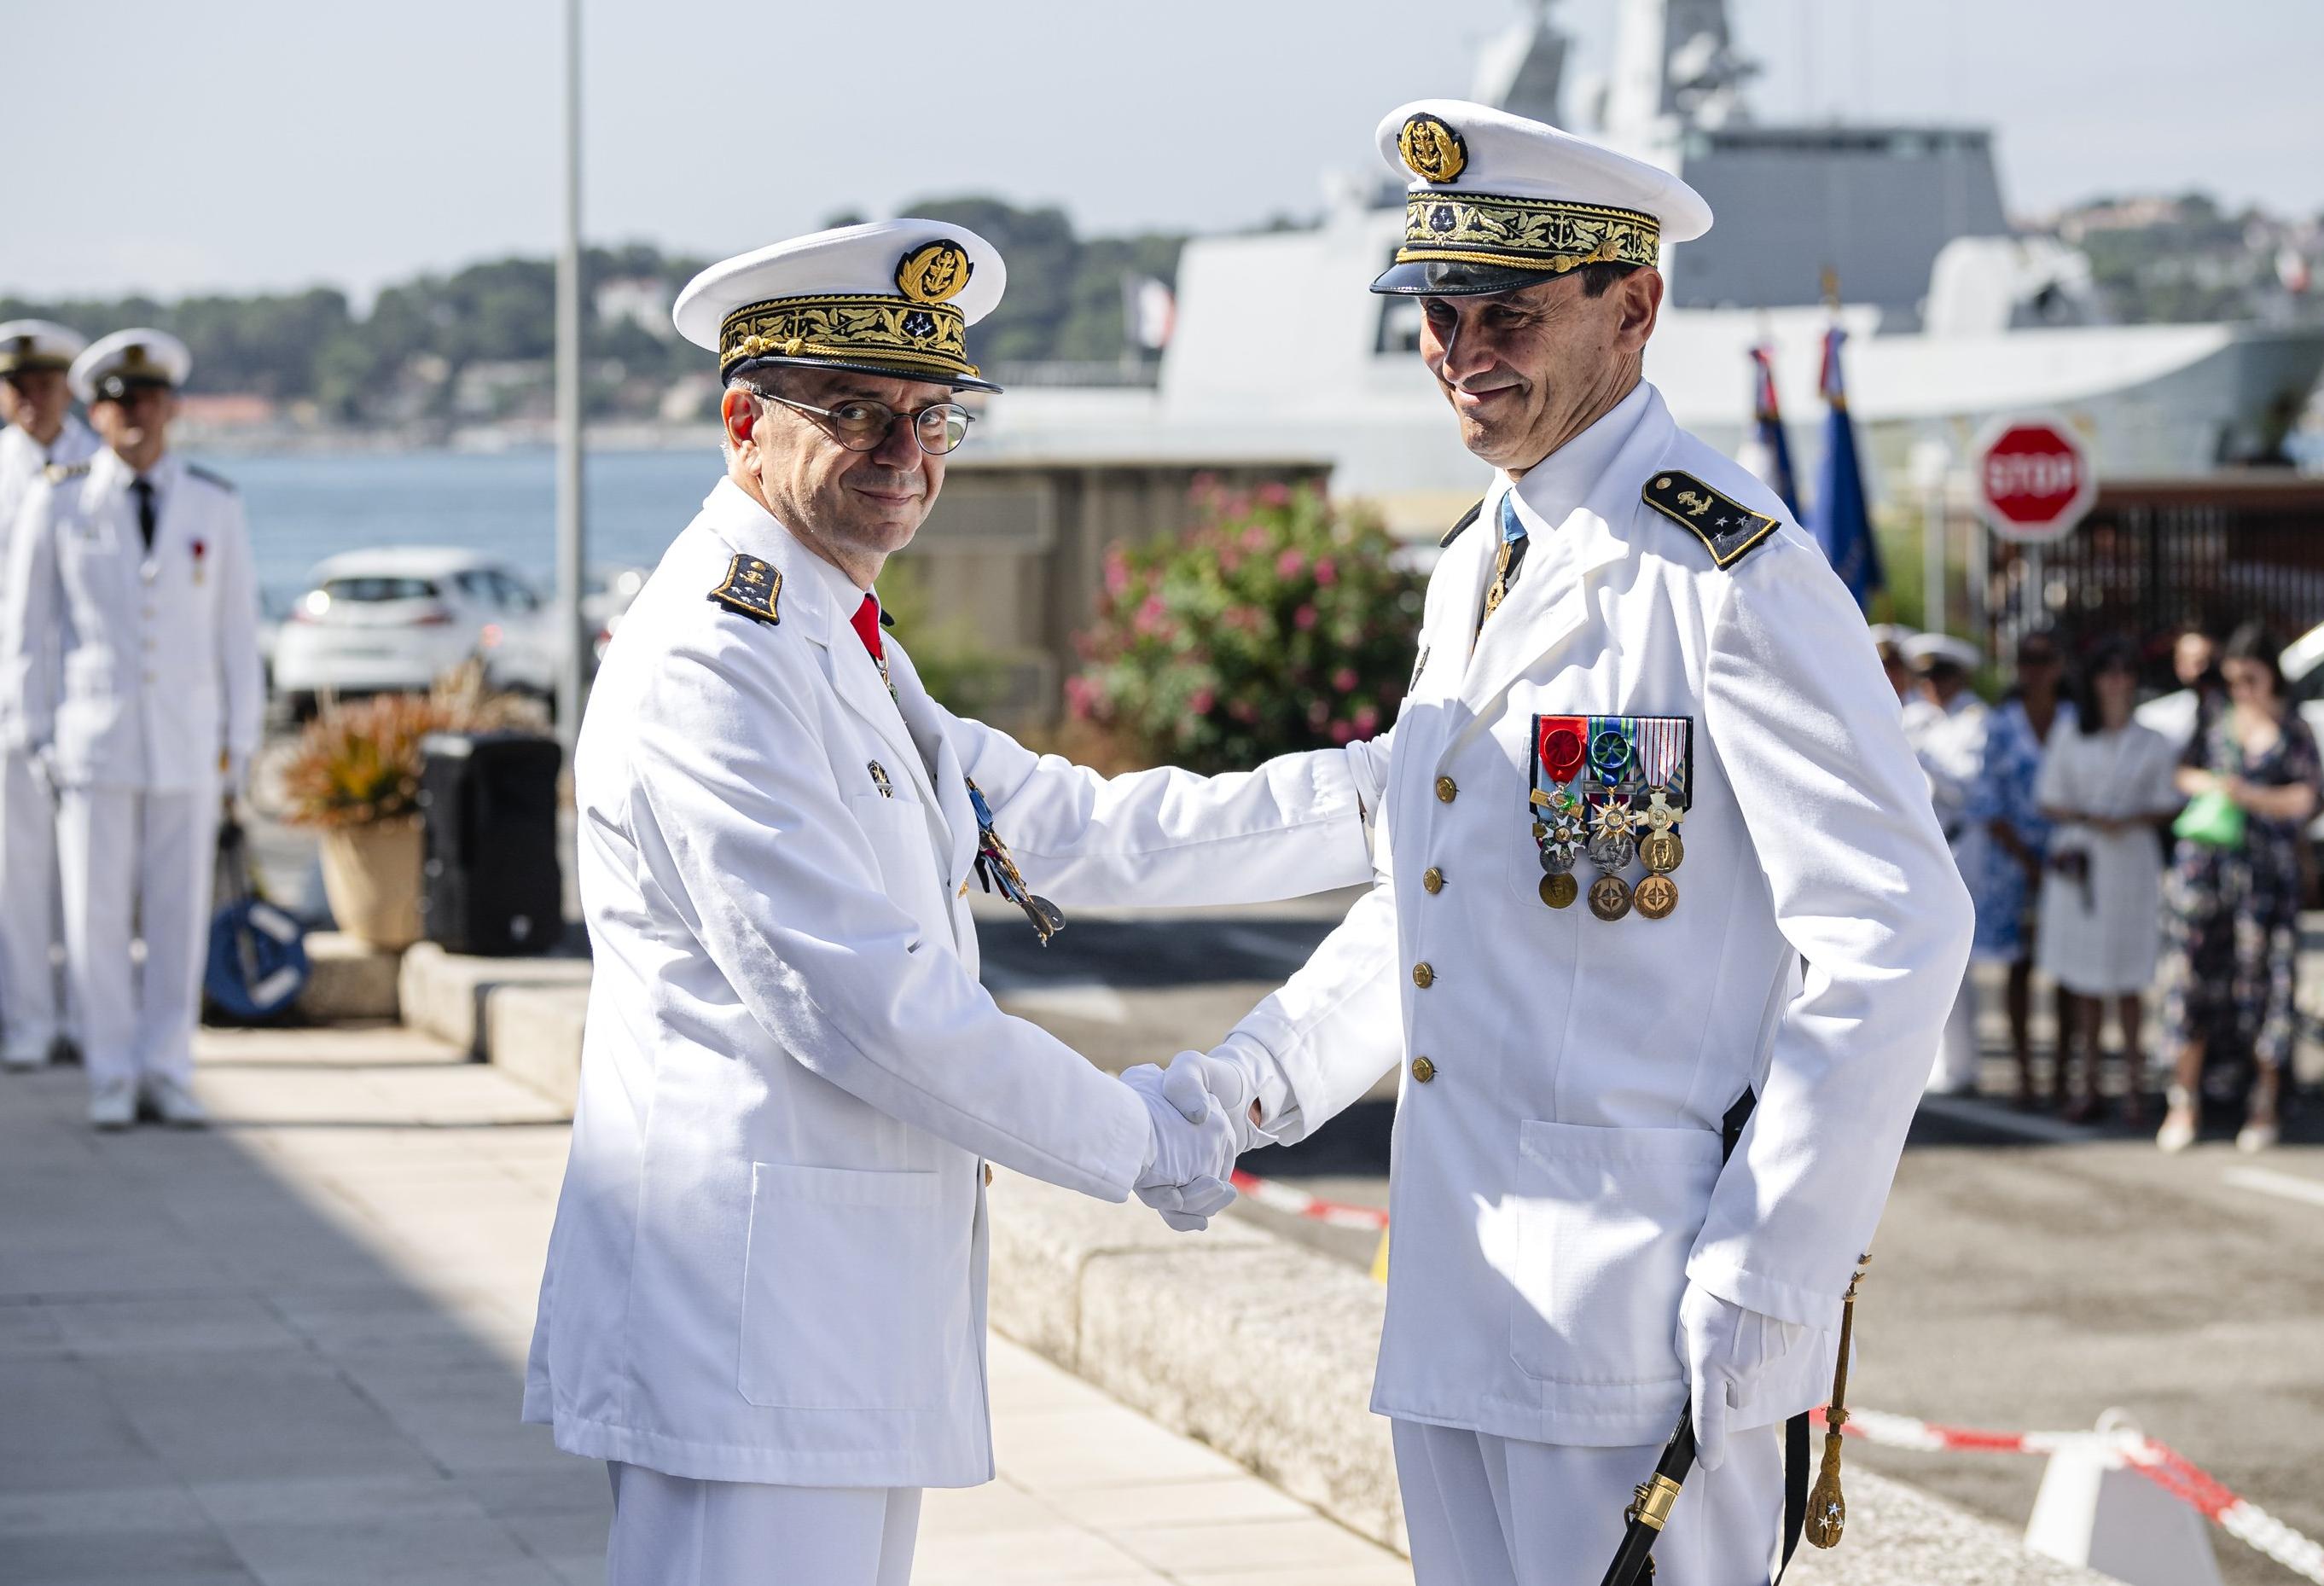  Le vice-amiral Daniel Faujour quitte la Marine après 39 années d’une carrière exceptionnelle